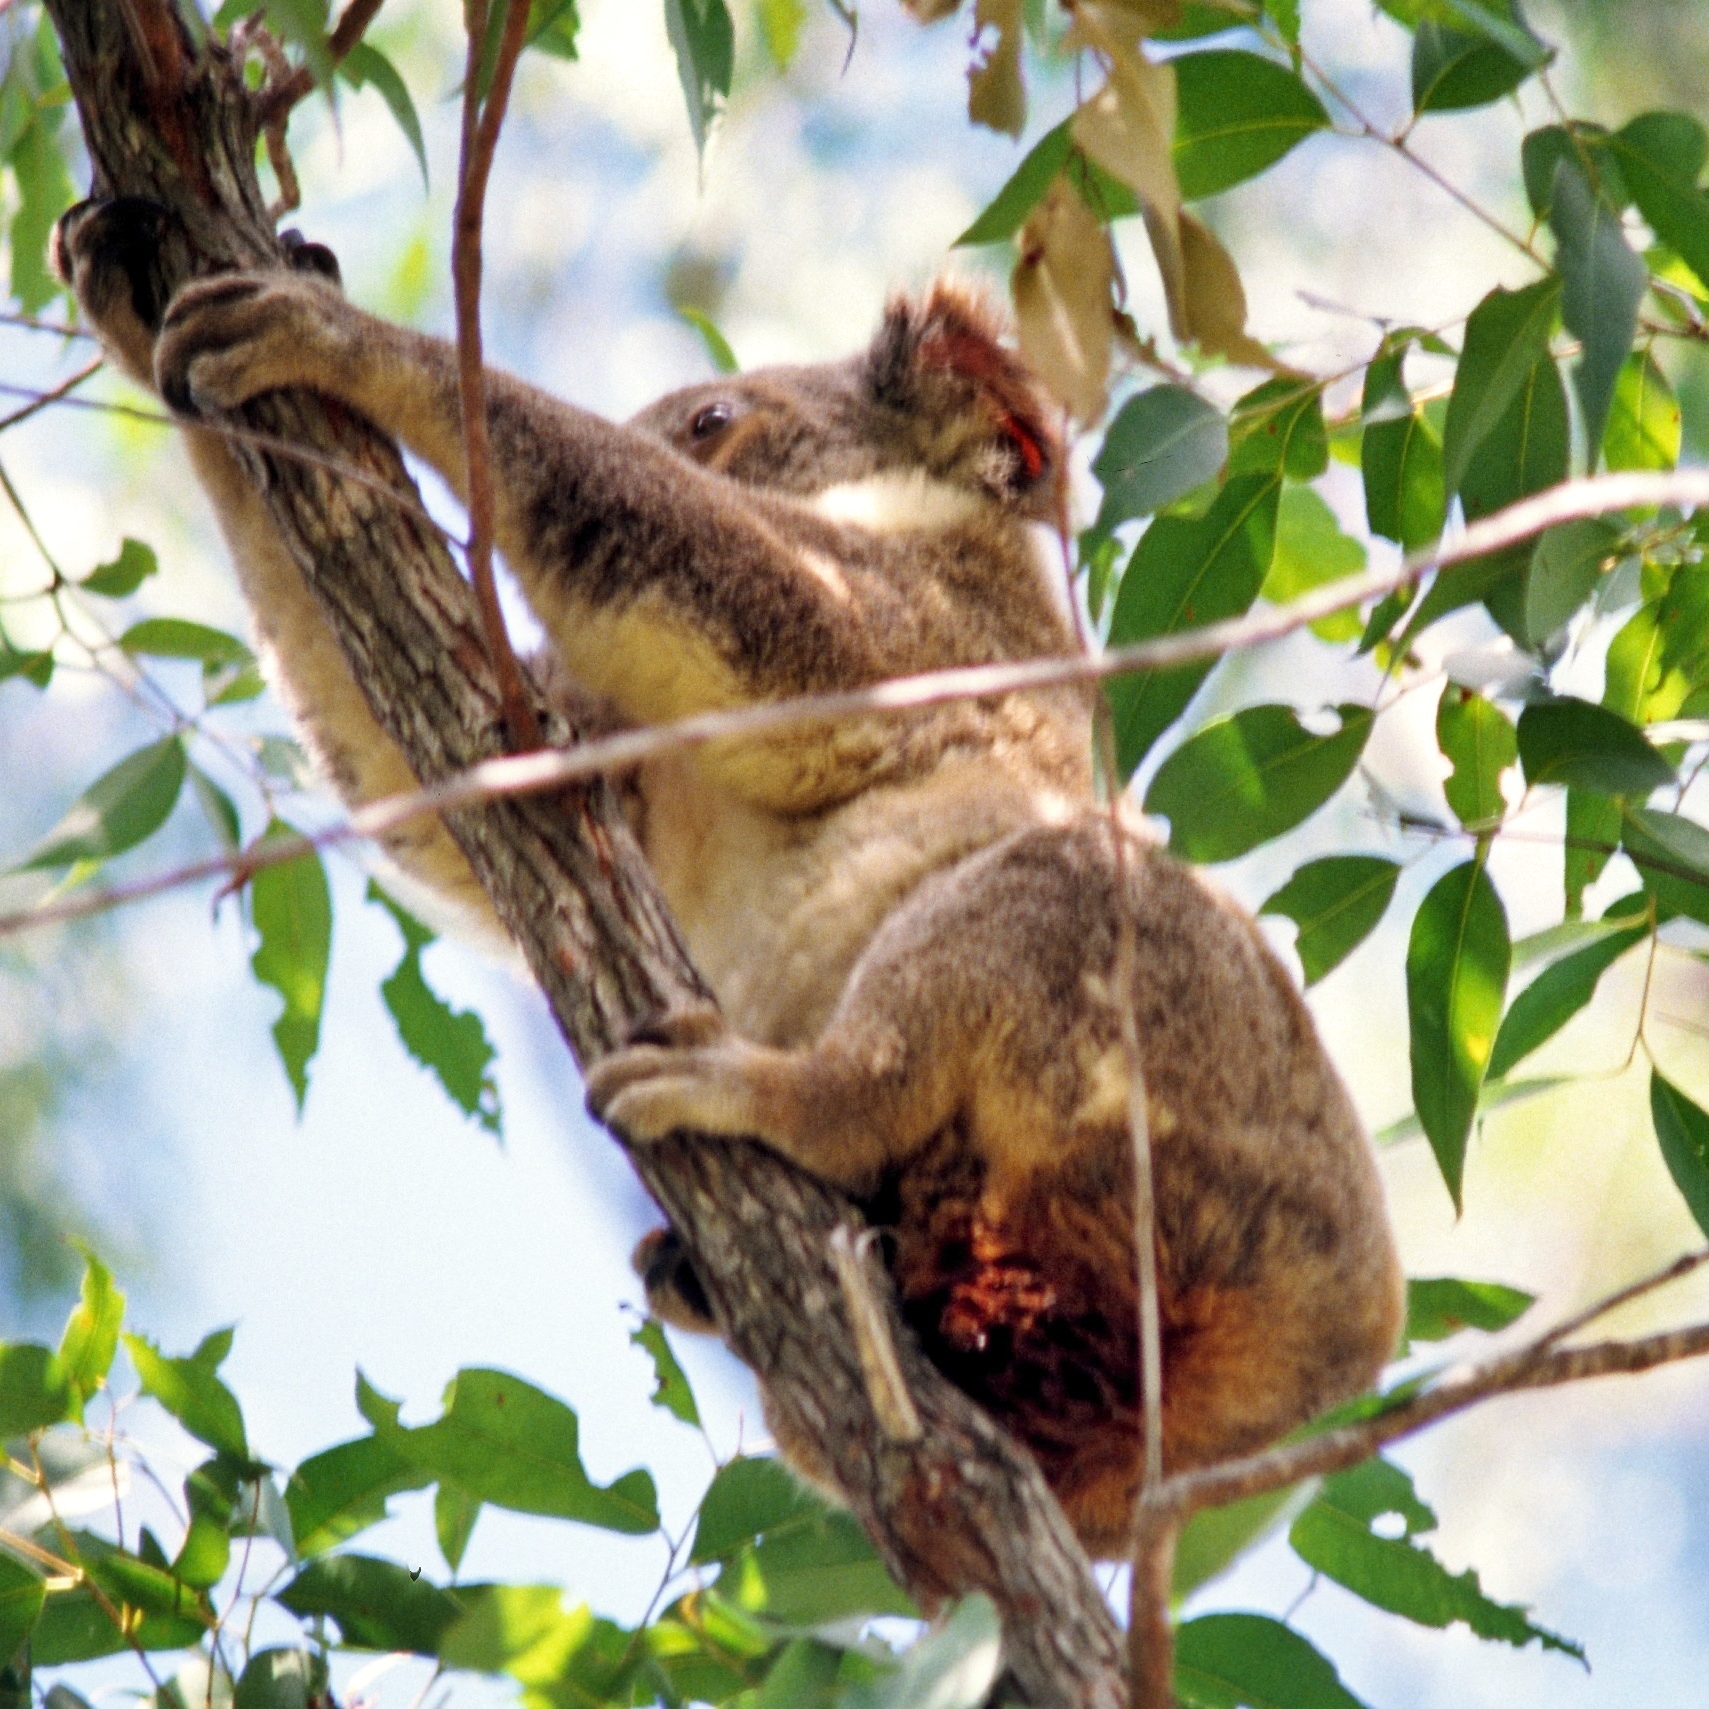 Image of Koala